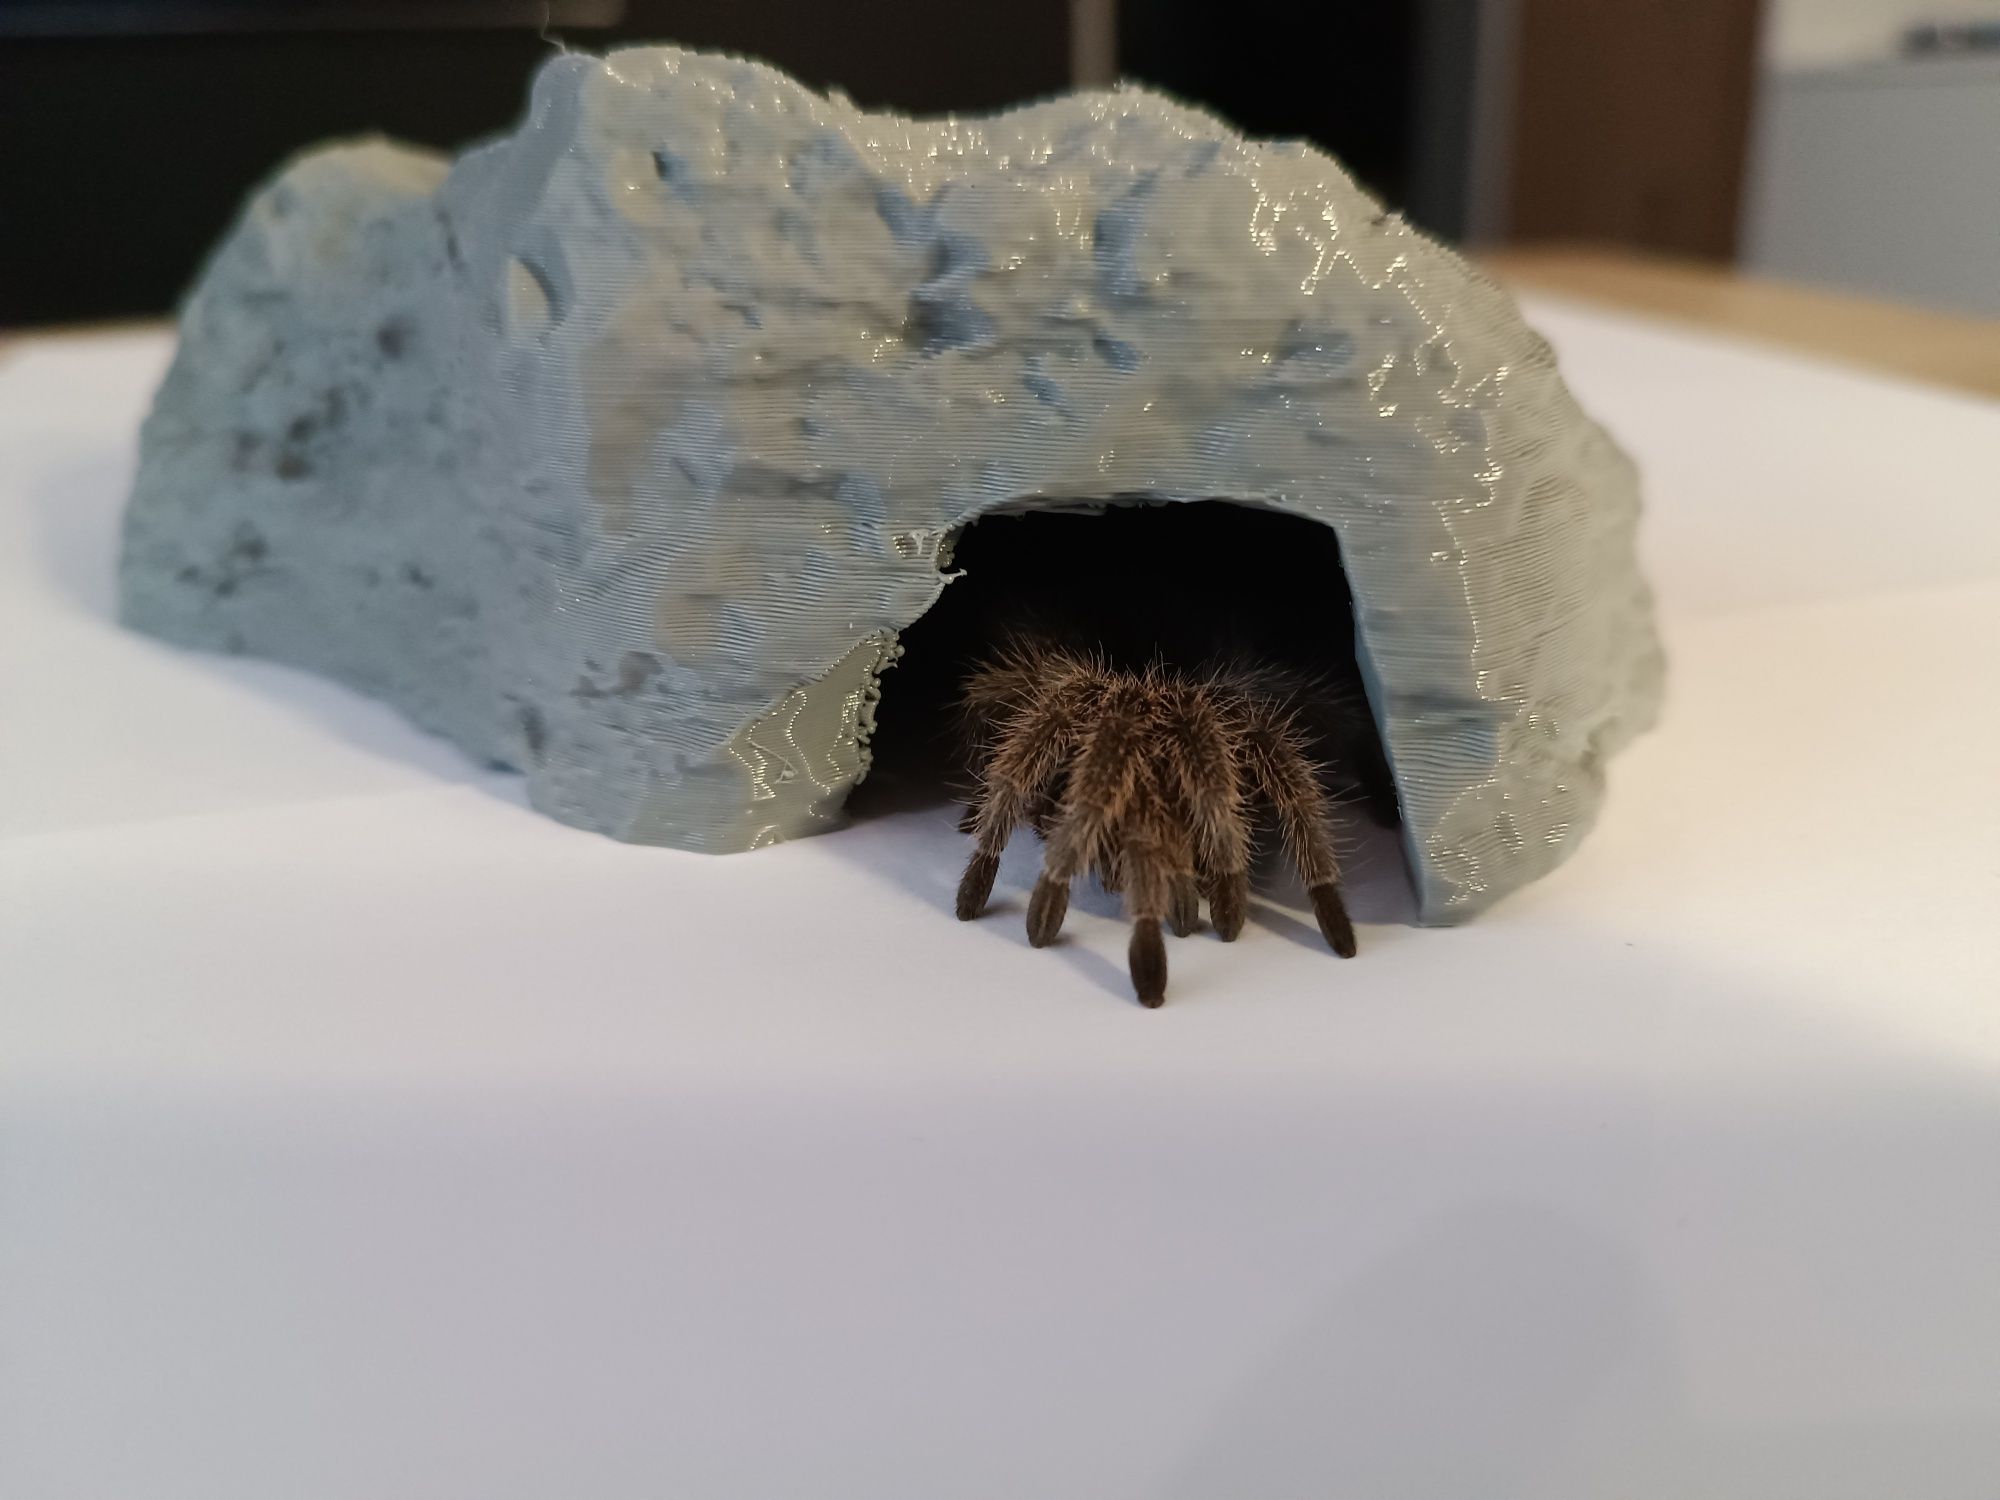 Jaskinia, kryjówka dla pająka, węża, jaszczurki